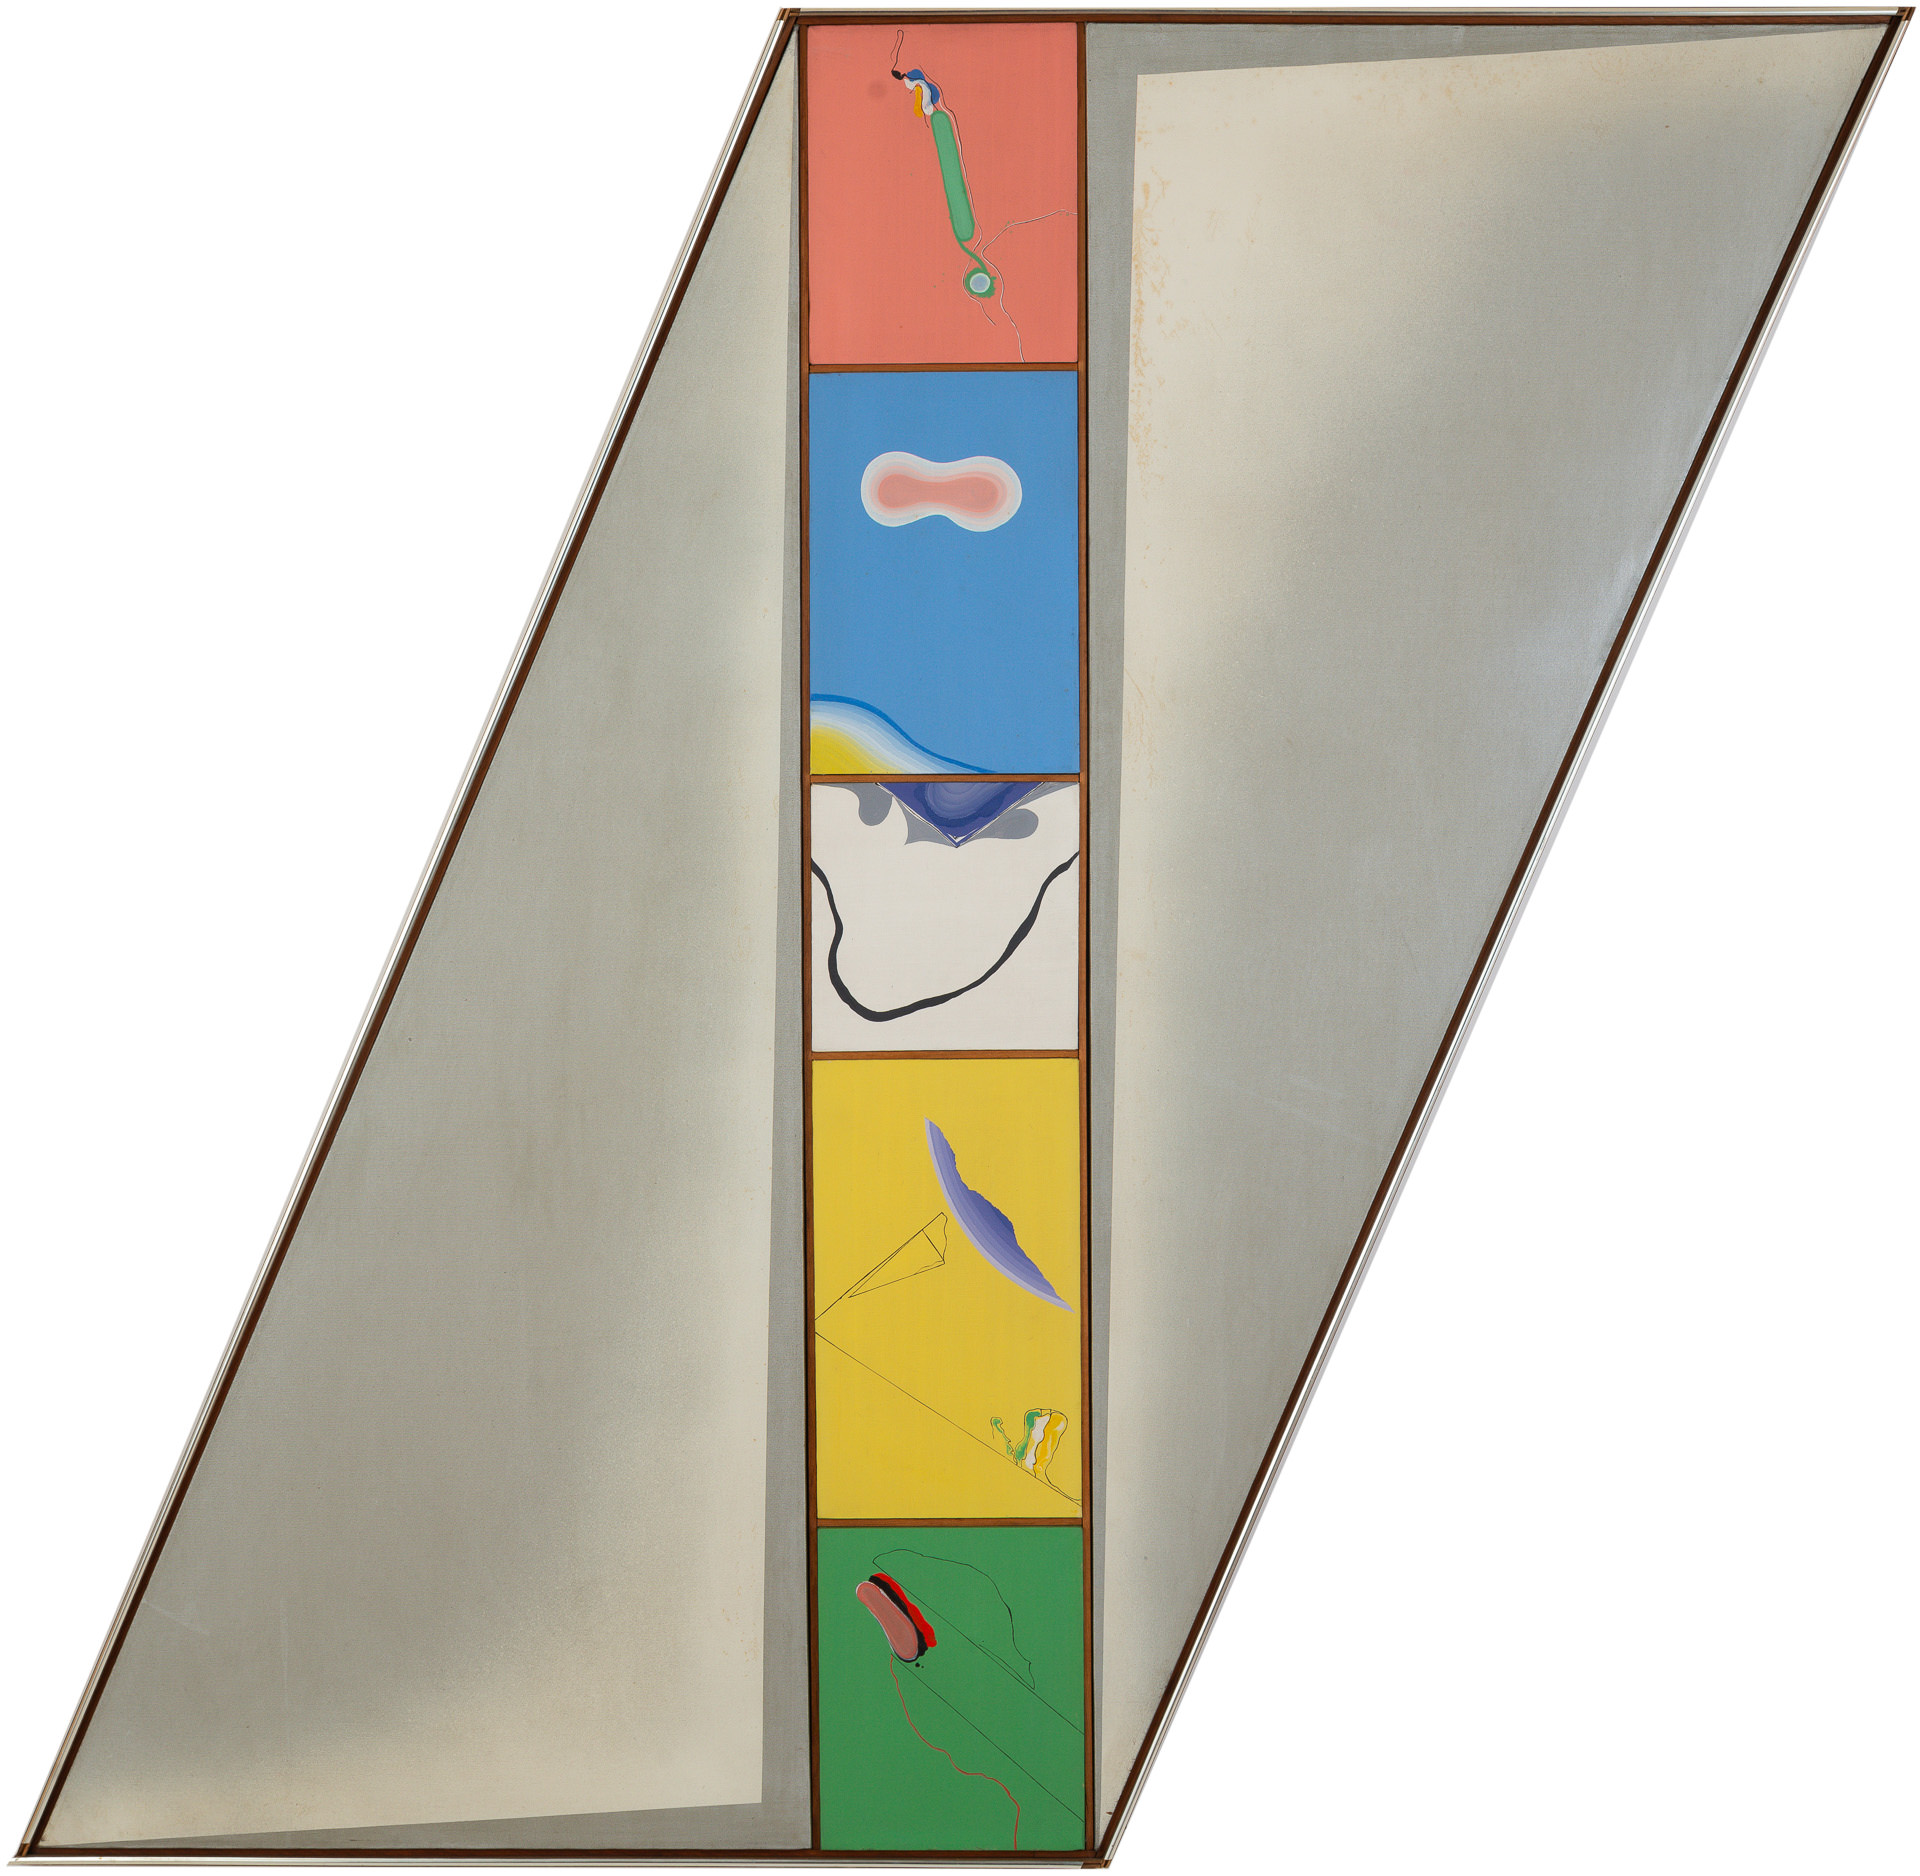 近藤竜男〈66.N.21〉, 油彩・アクリル・カンヴァス, 142.3×145.2, 1966